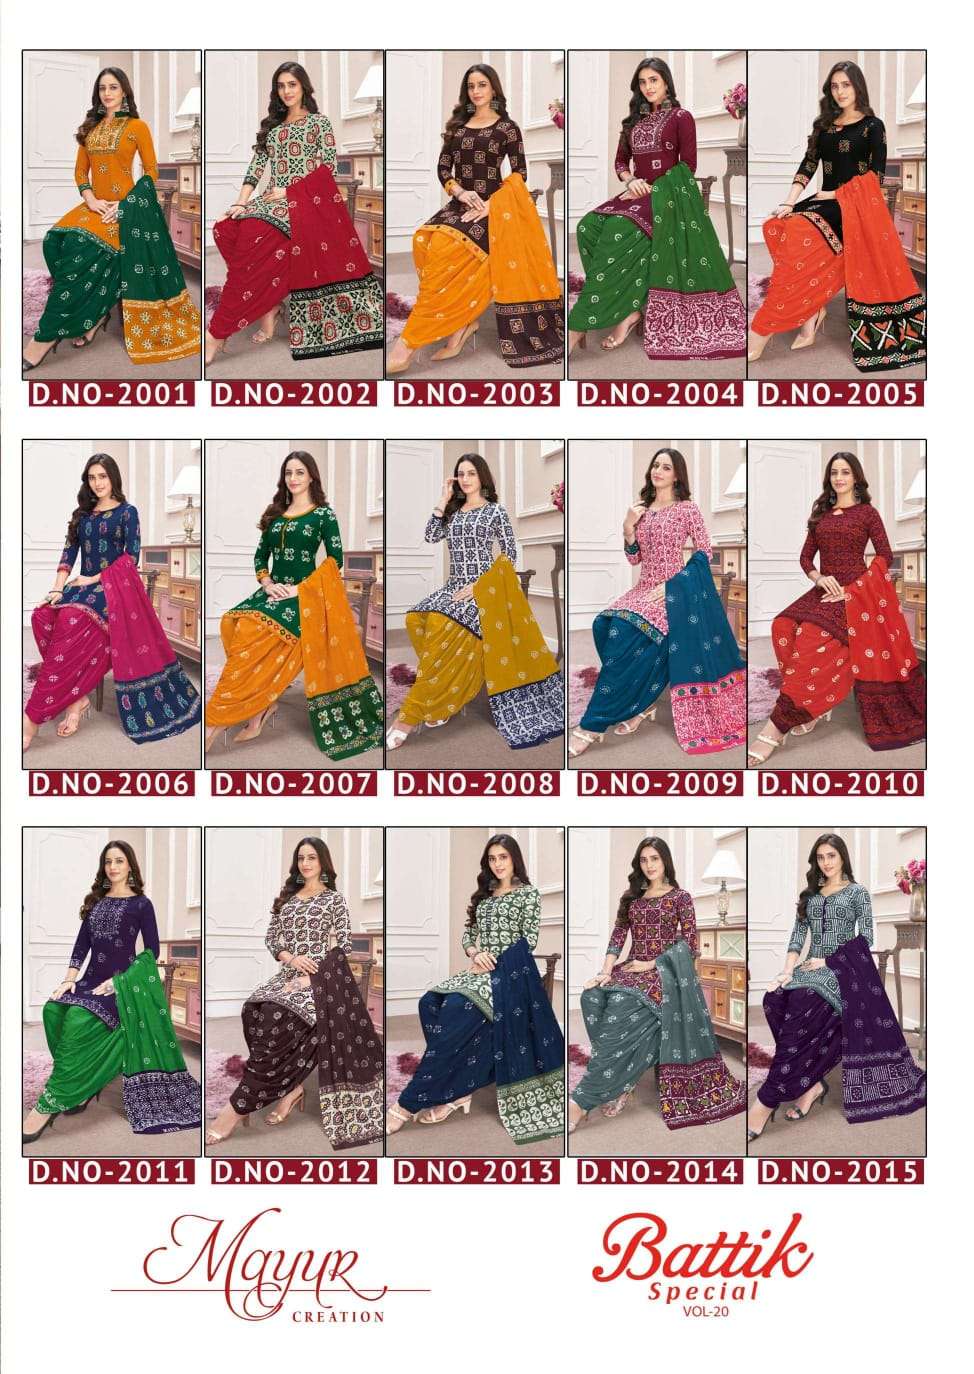 mayur batik special vol 20 series 2001-2015 cotton suit 